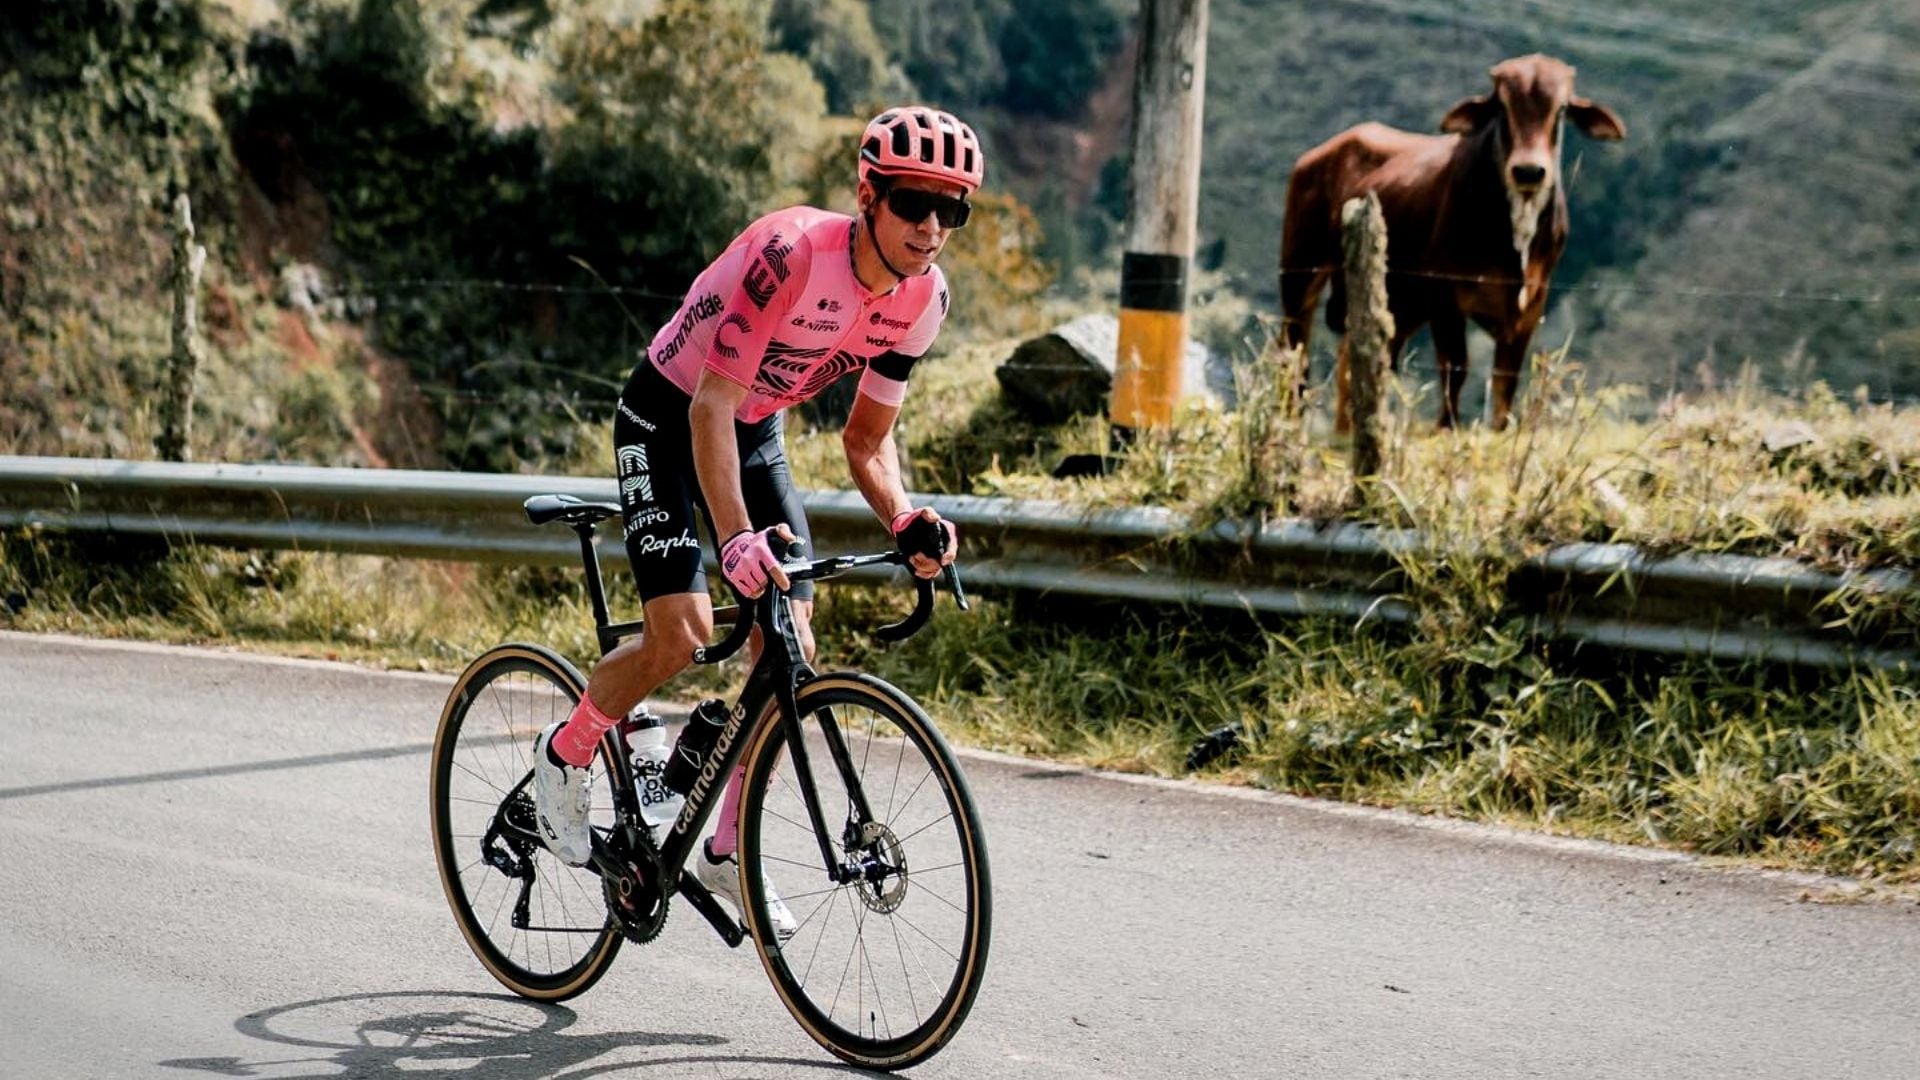 Emotivo y con muchos sentimientos encontrados, así recordó el ciclista colombianos sus primeros años - crédito @rigobertouran (Instagram)